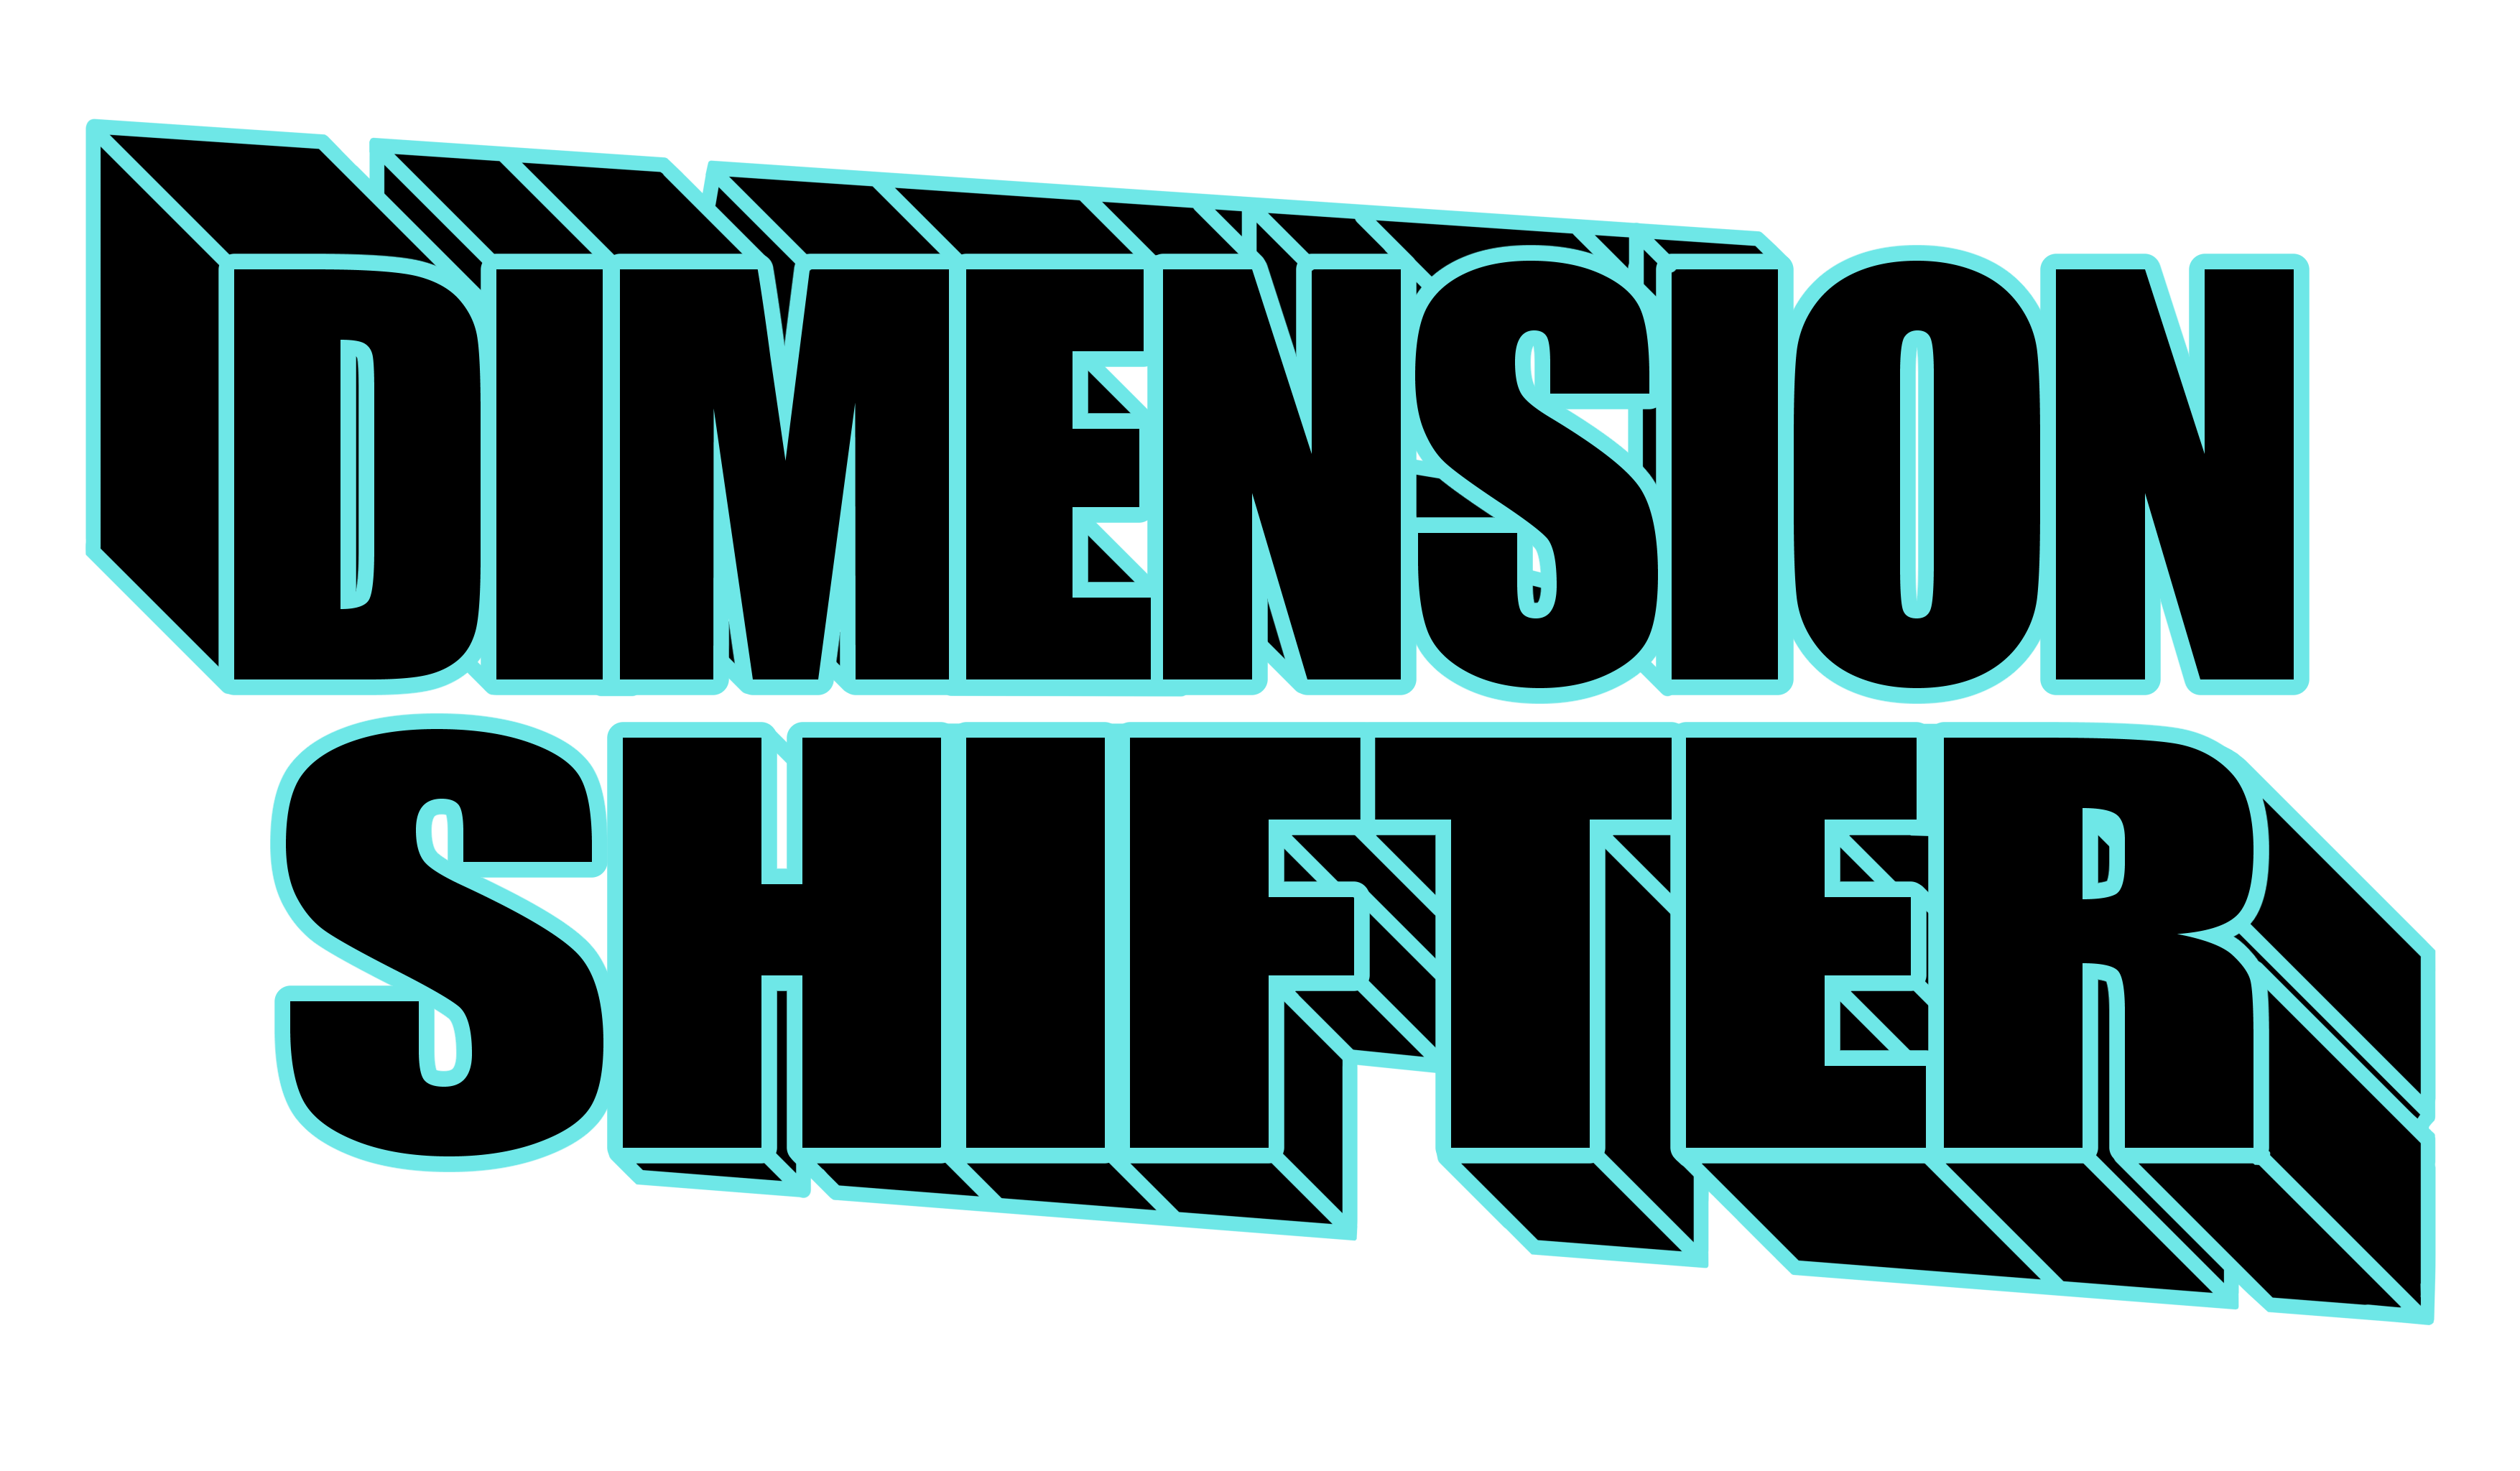 Dimension Shifter